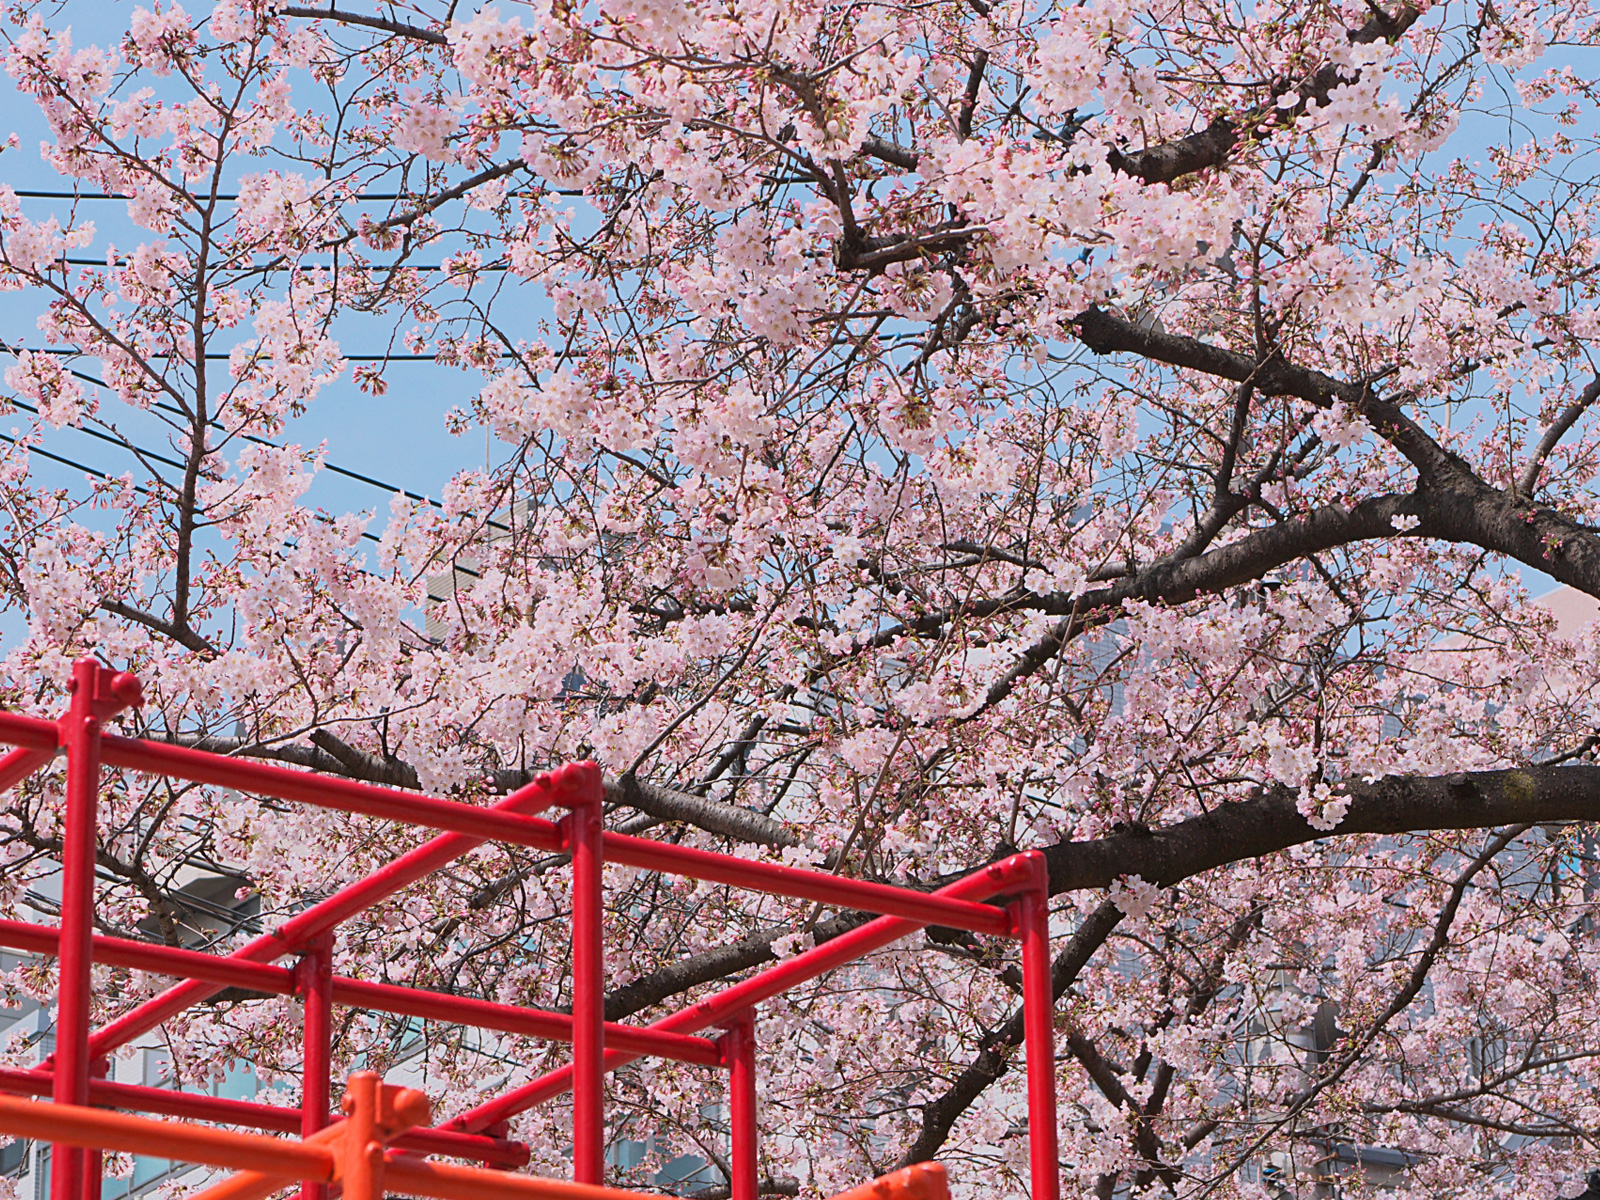 桜も咲き始めてはいますが、先週に続き寒い寒いバドミントン。。